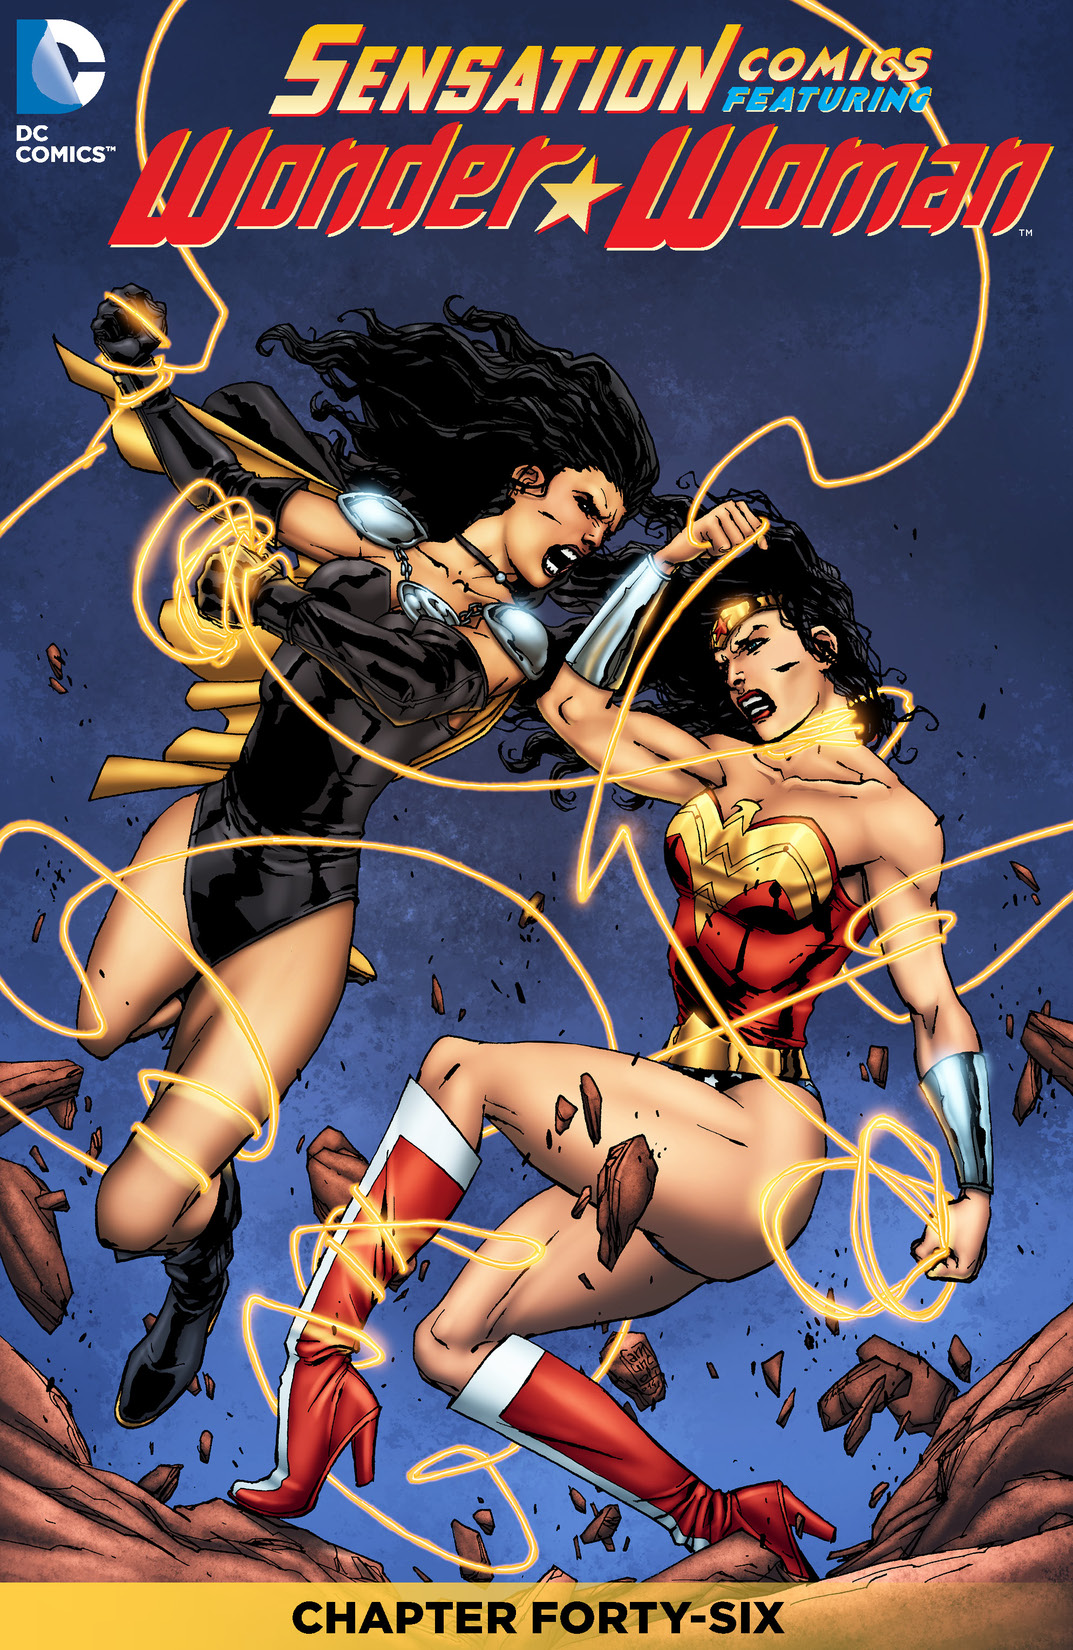 Sensation Comics Featuring Wonder Woman #46 preview images